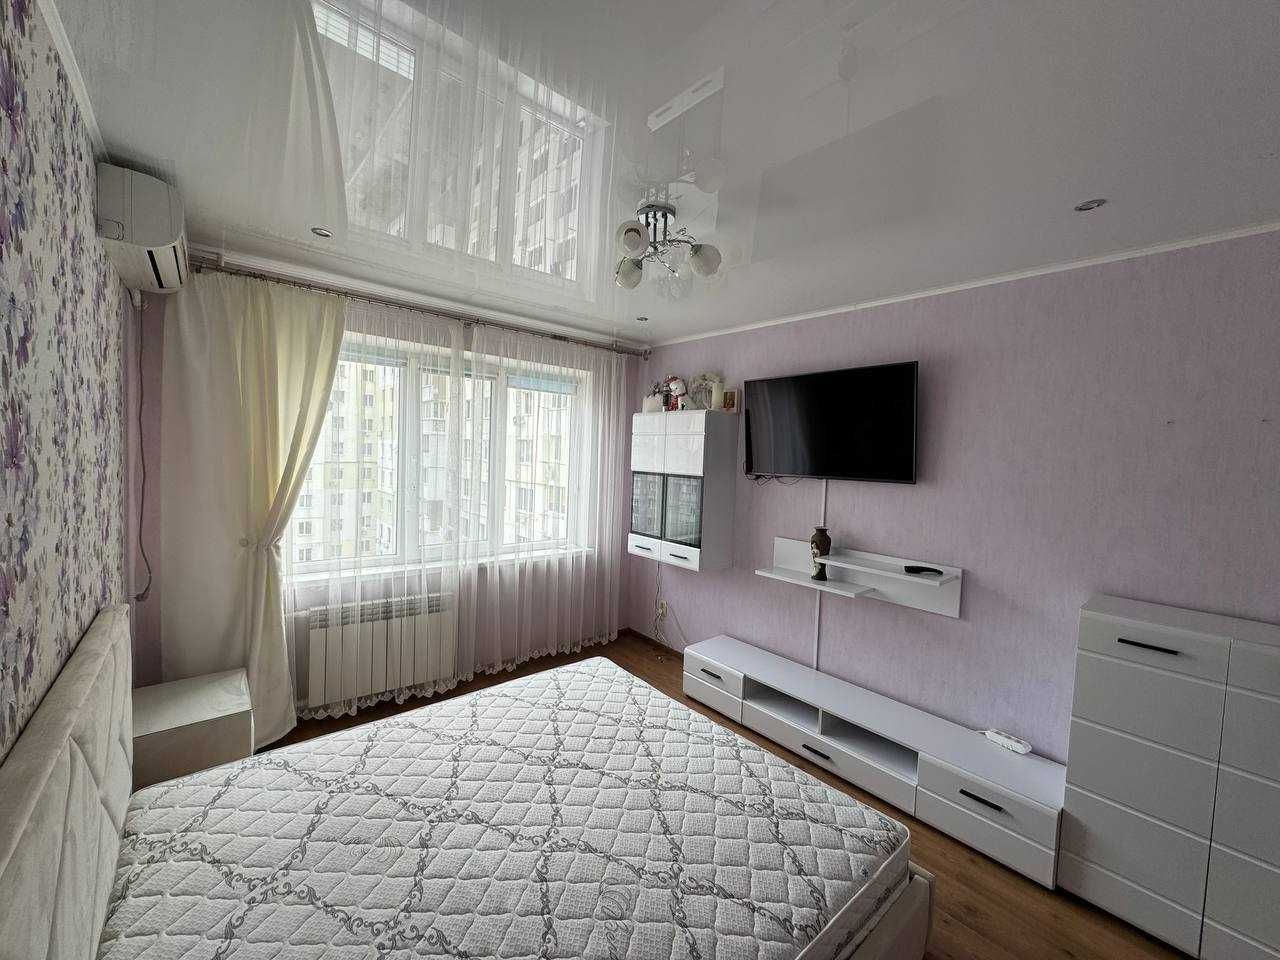 2-х к. квартира в новом доме на Сахарова с ремонтом, мебелью.